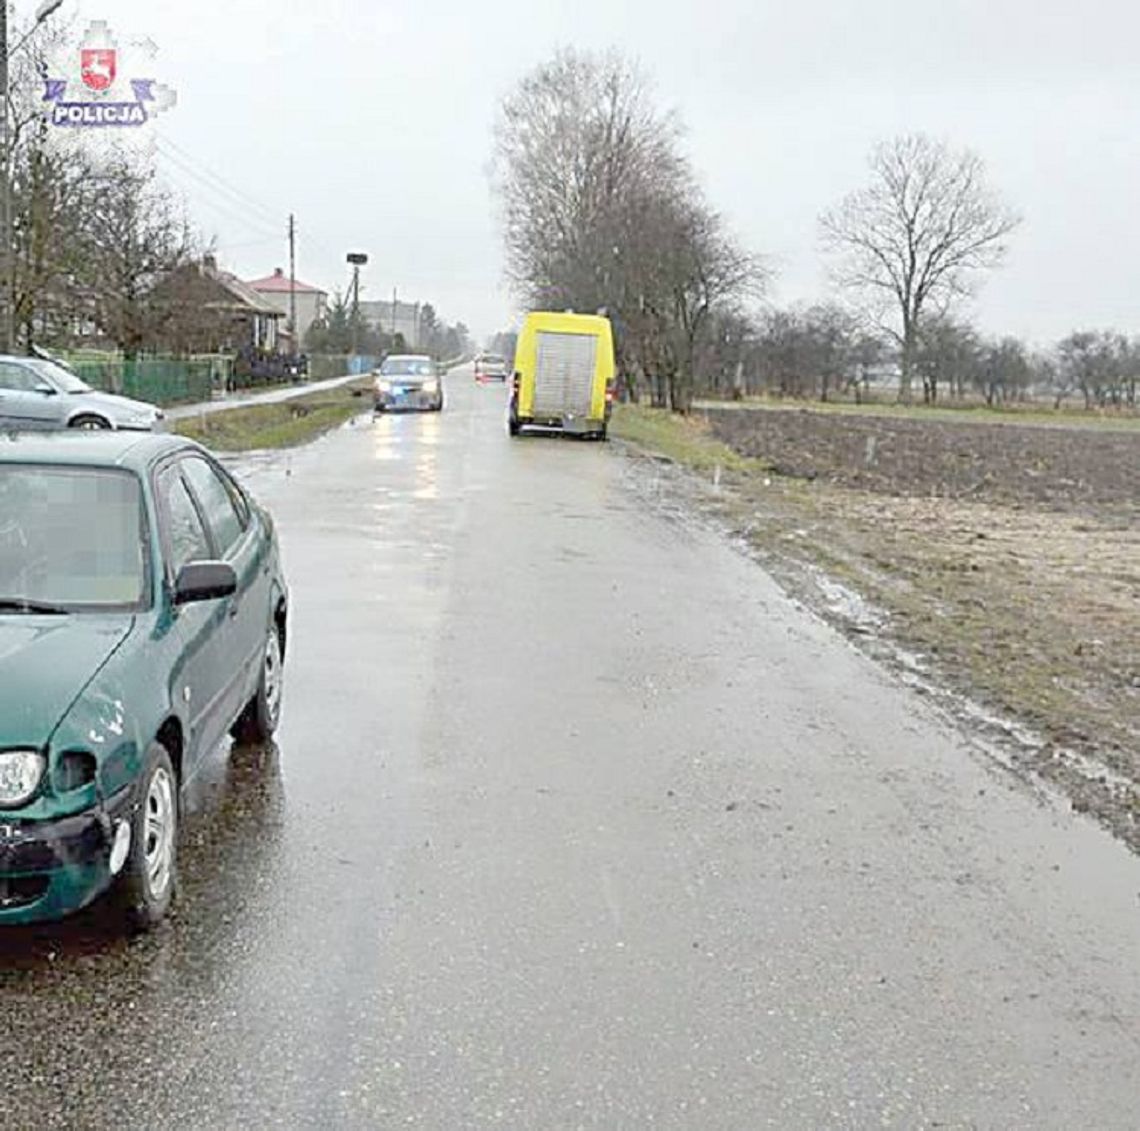 Horyszów Polski: Wprost pod samochód